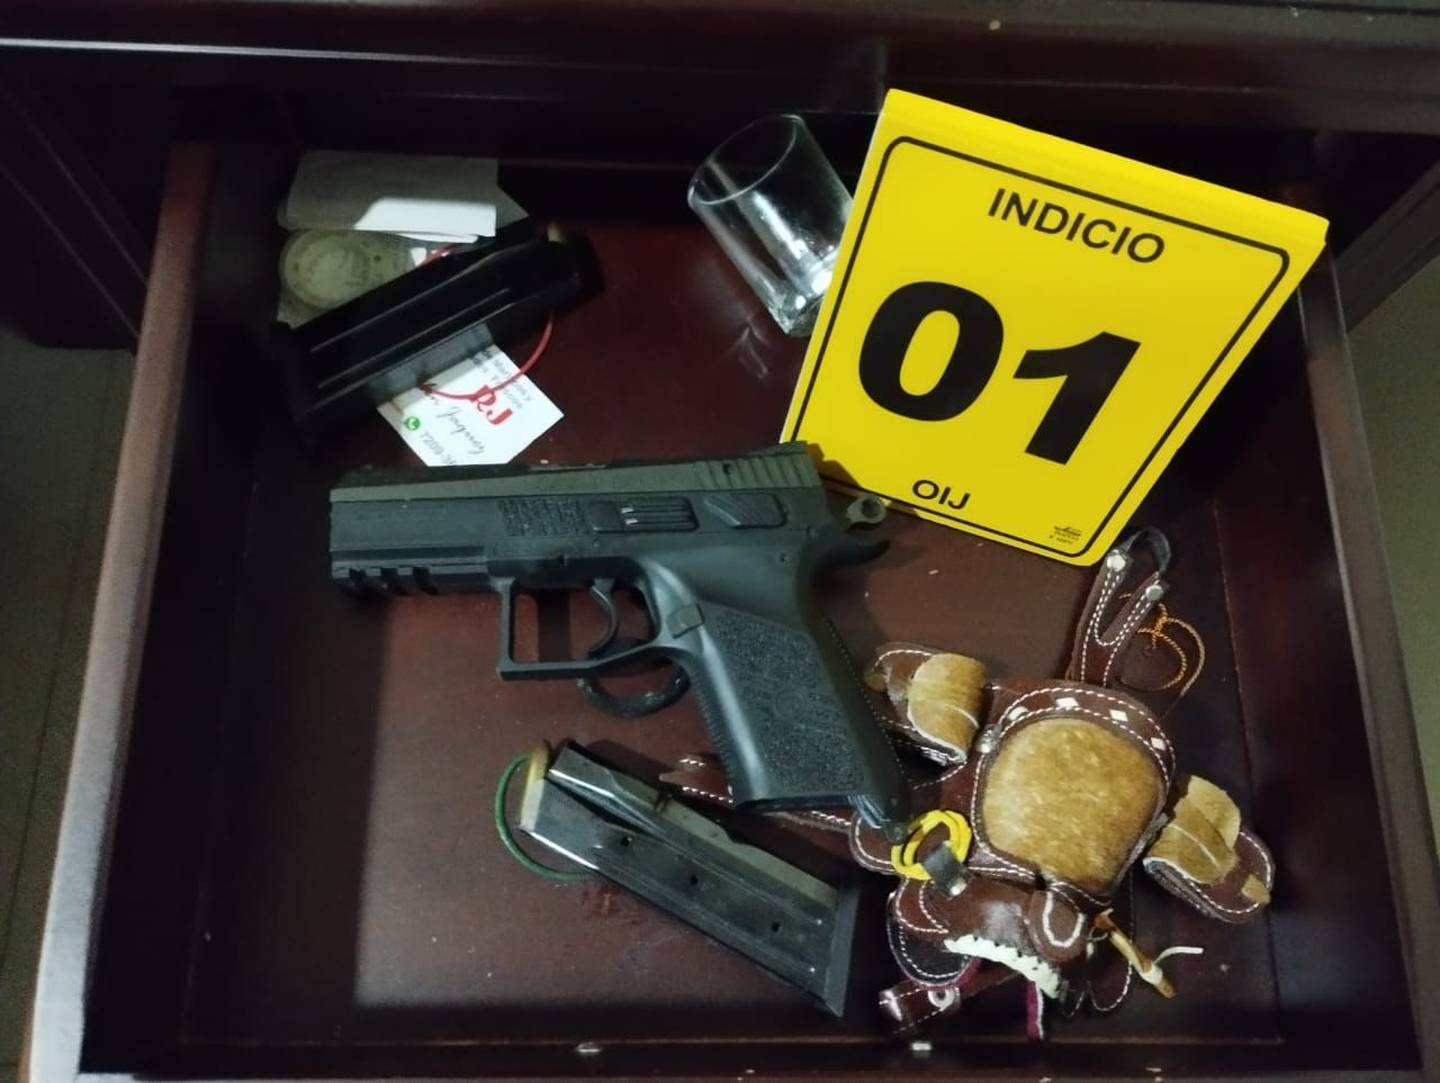 En gavetas, al pie de la cama y en los cuartos de la casa donde funcionaba el laboratorio, habían armas de fuego. Foto: OIJ